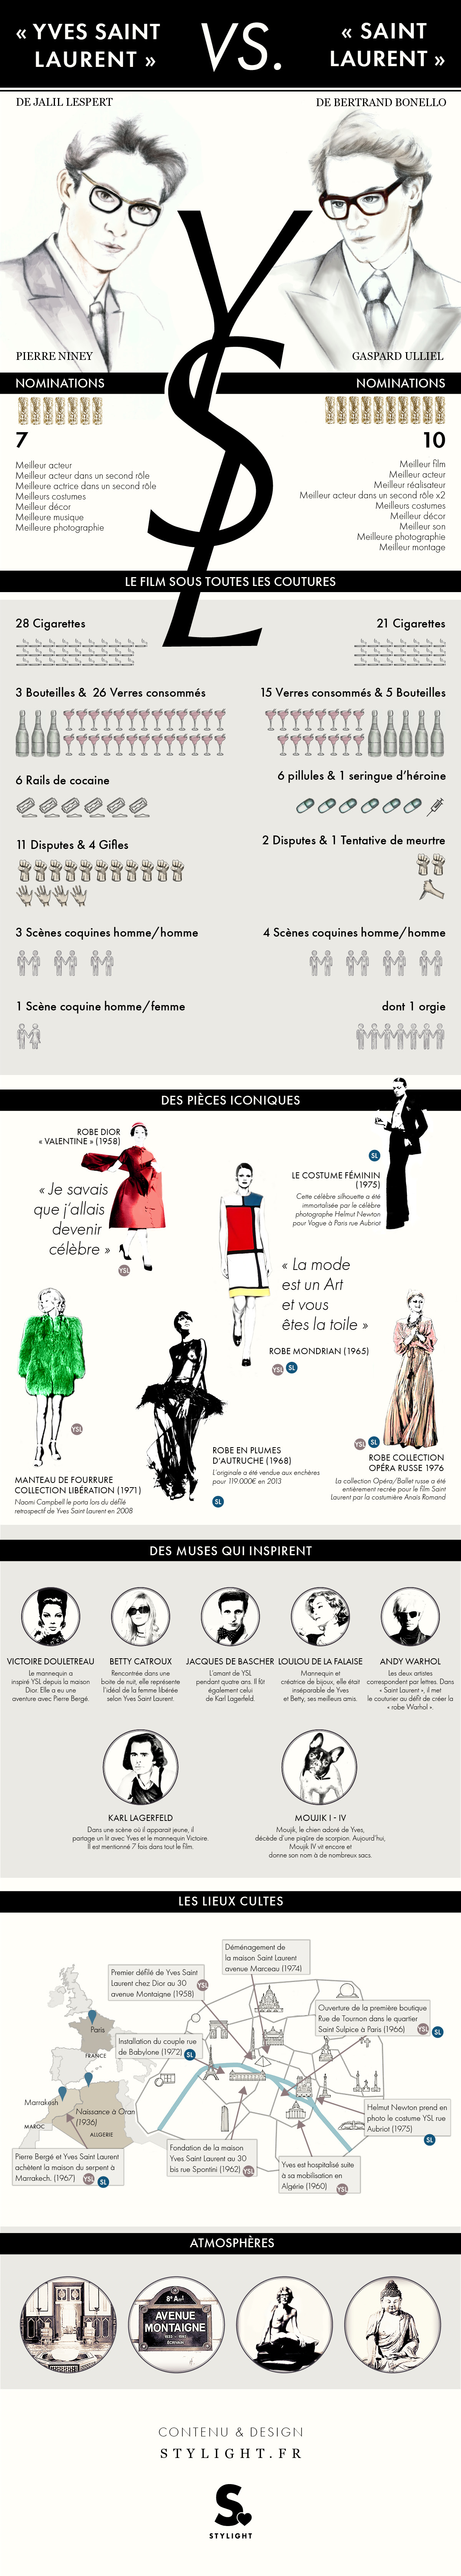 Infographie Césars 2015